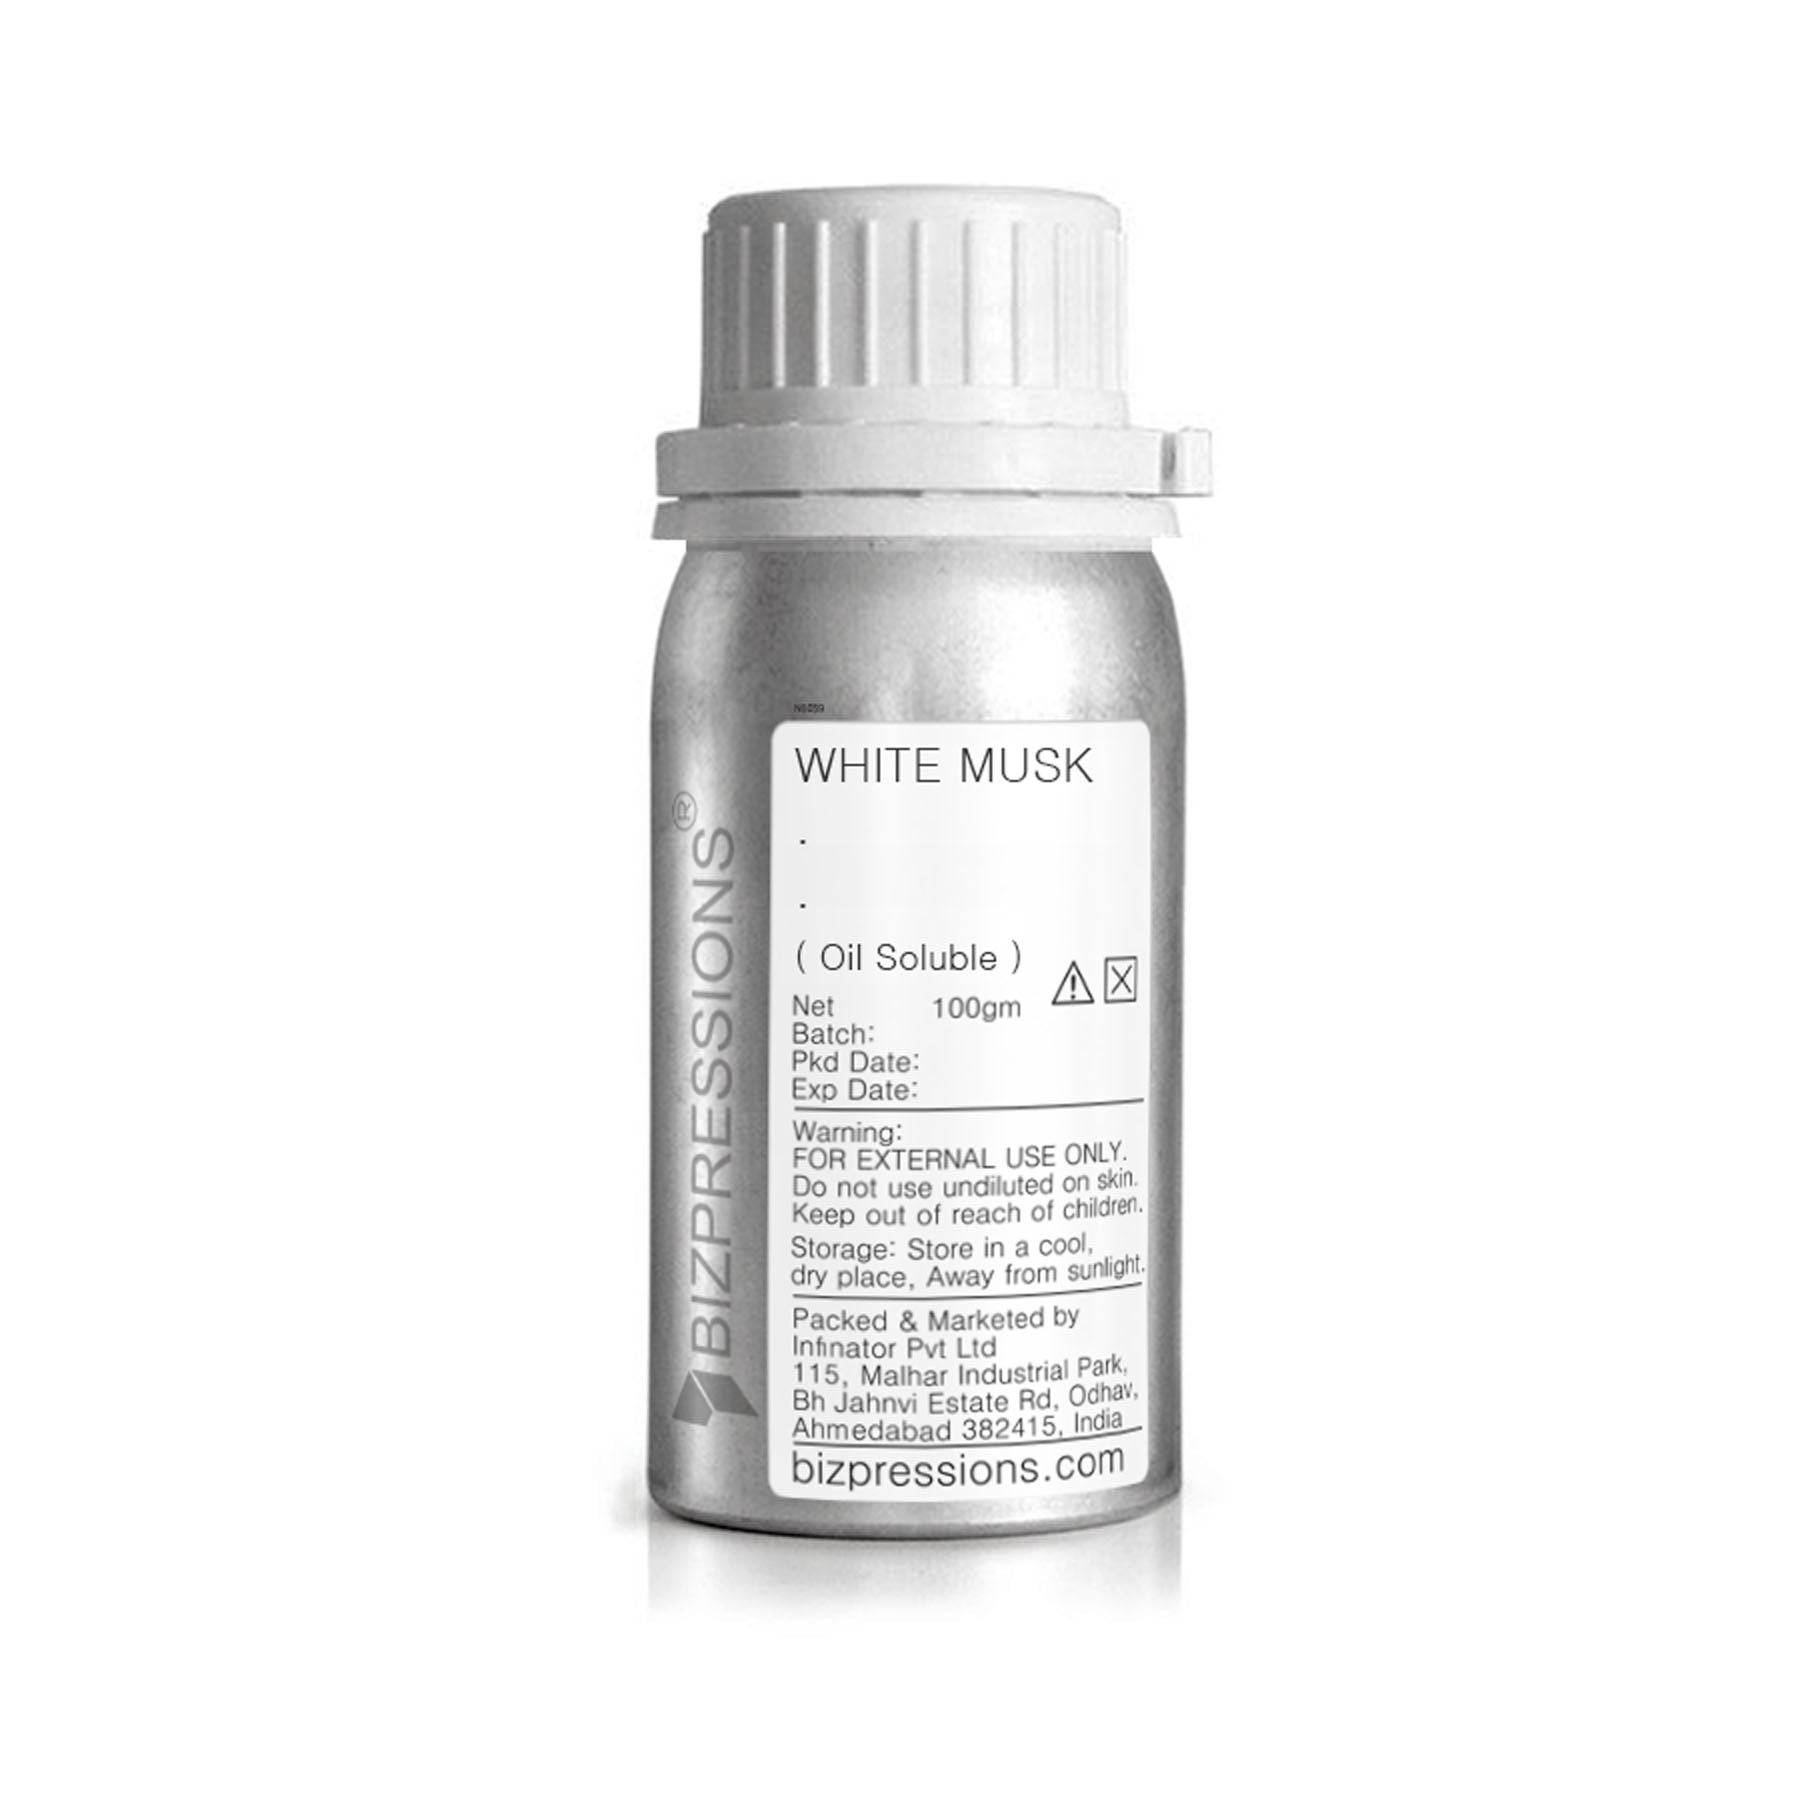 WHITE MUSK - Fragrance ( Oil Soluble ) - 100 gm